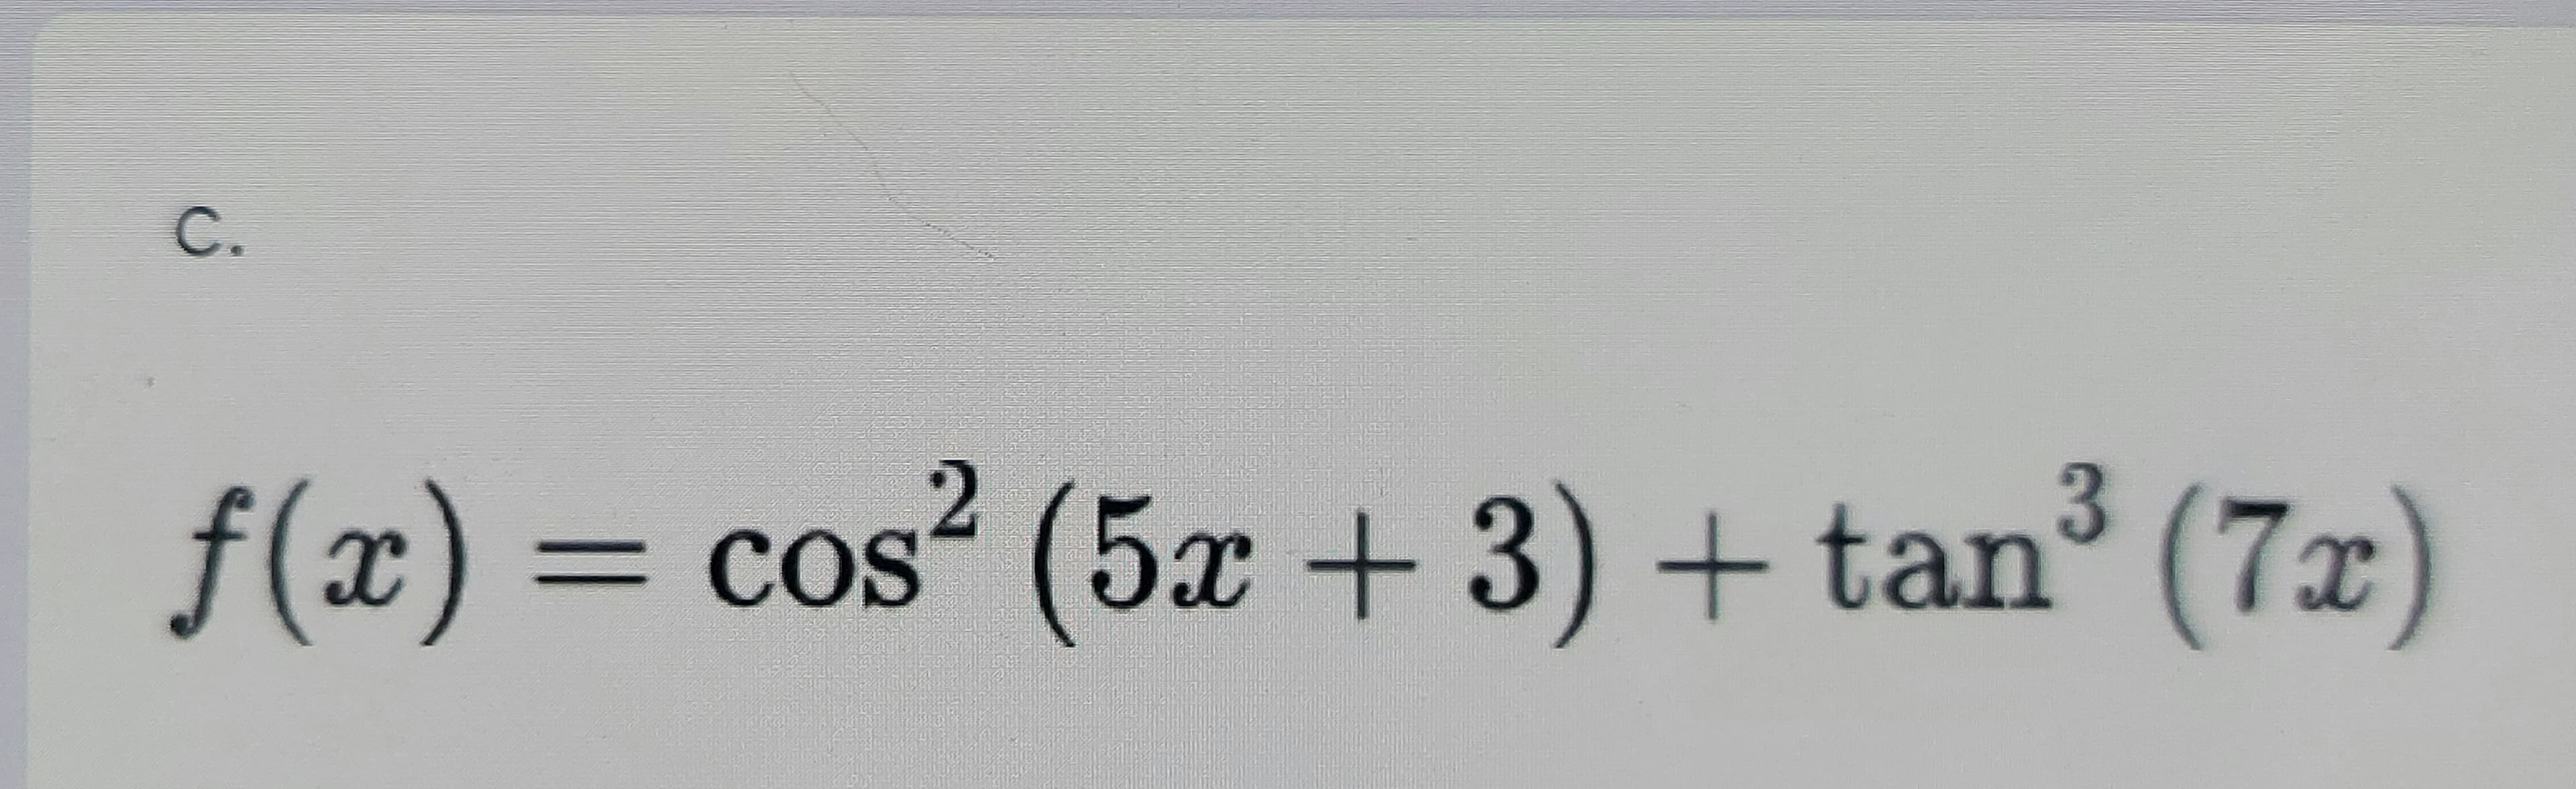 C.
f(x) = ³ (7x)
cos (5x + 3) + tan
%3D
